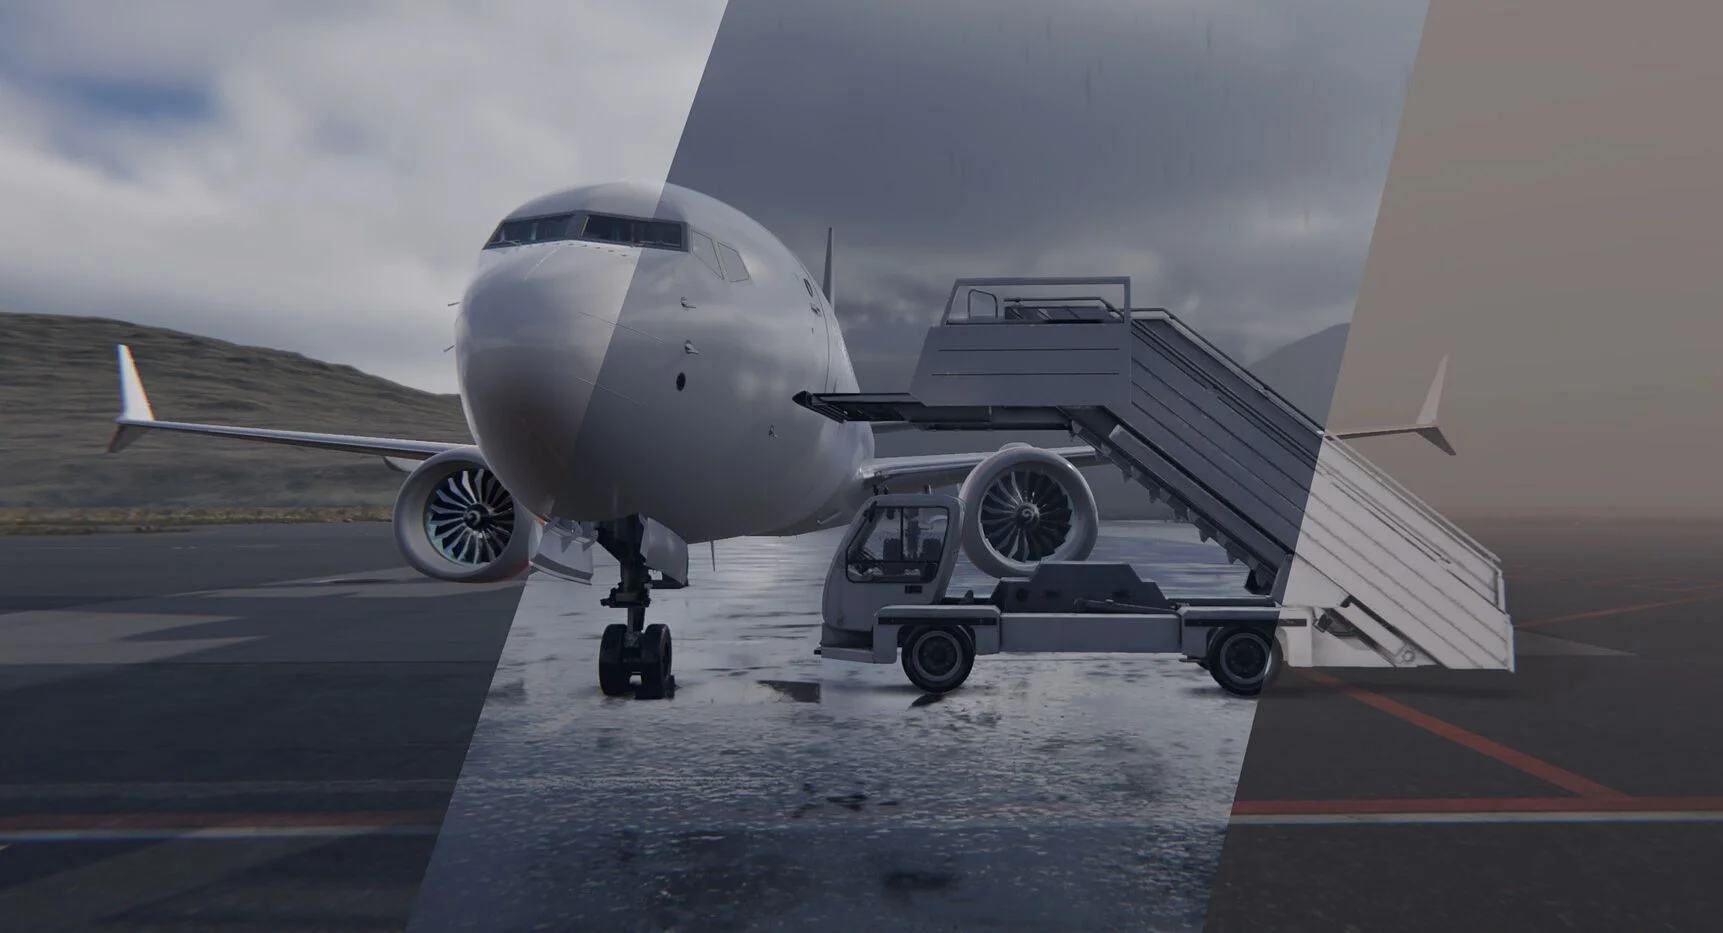 AirportSim sort sur Steam le 19 octobre – image de couverture